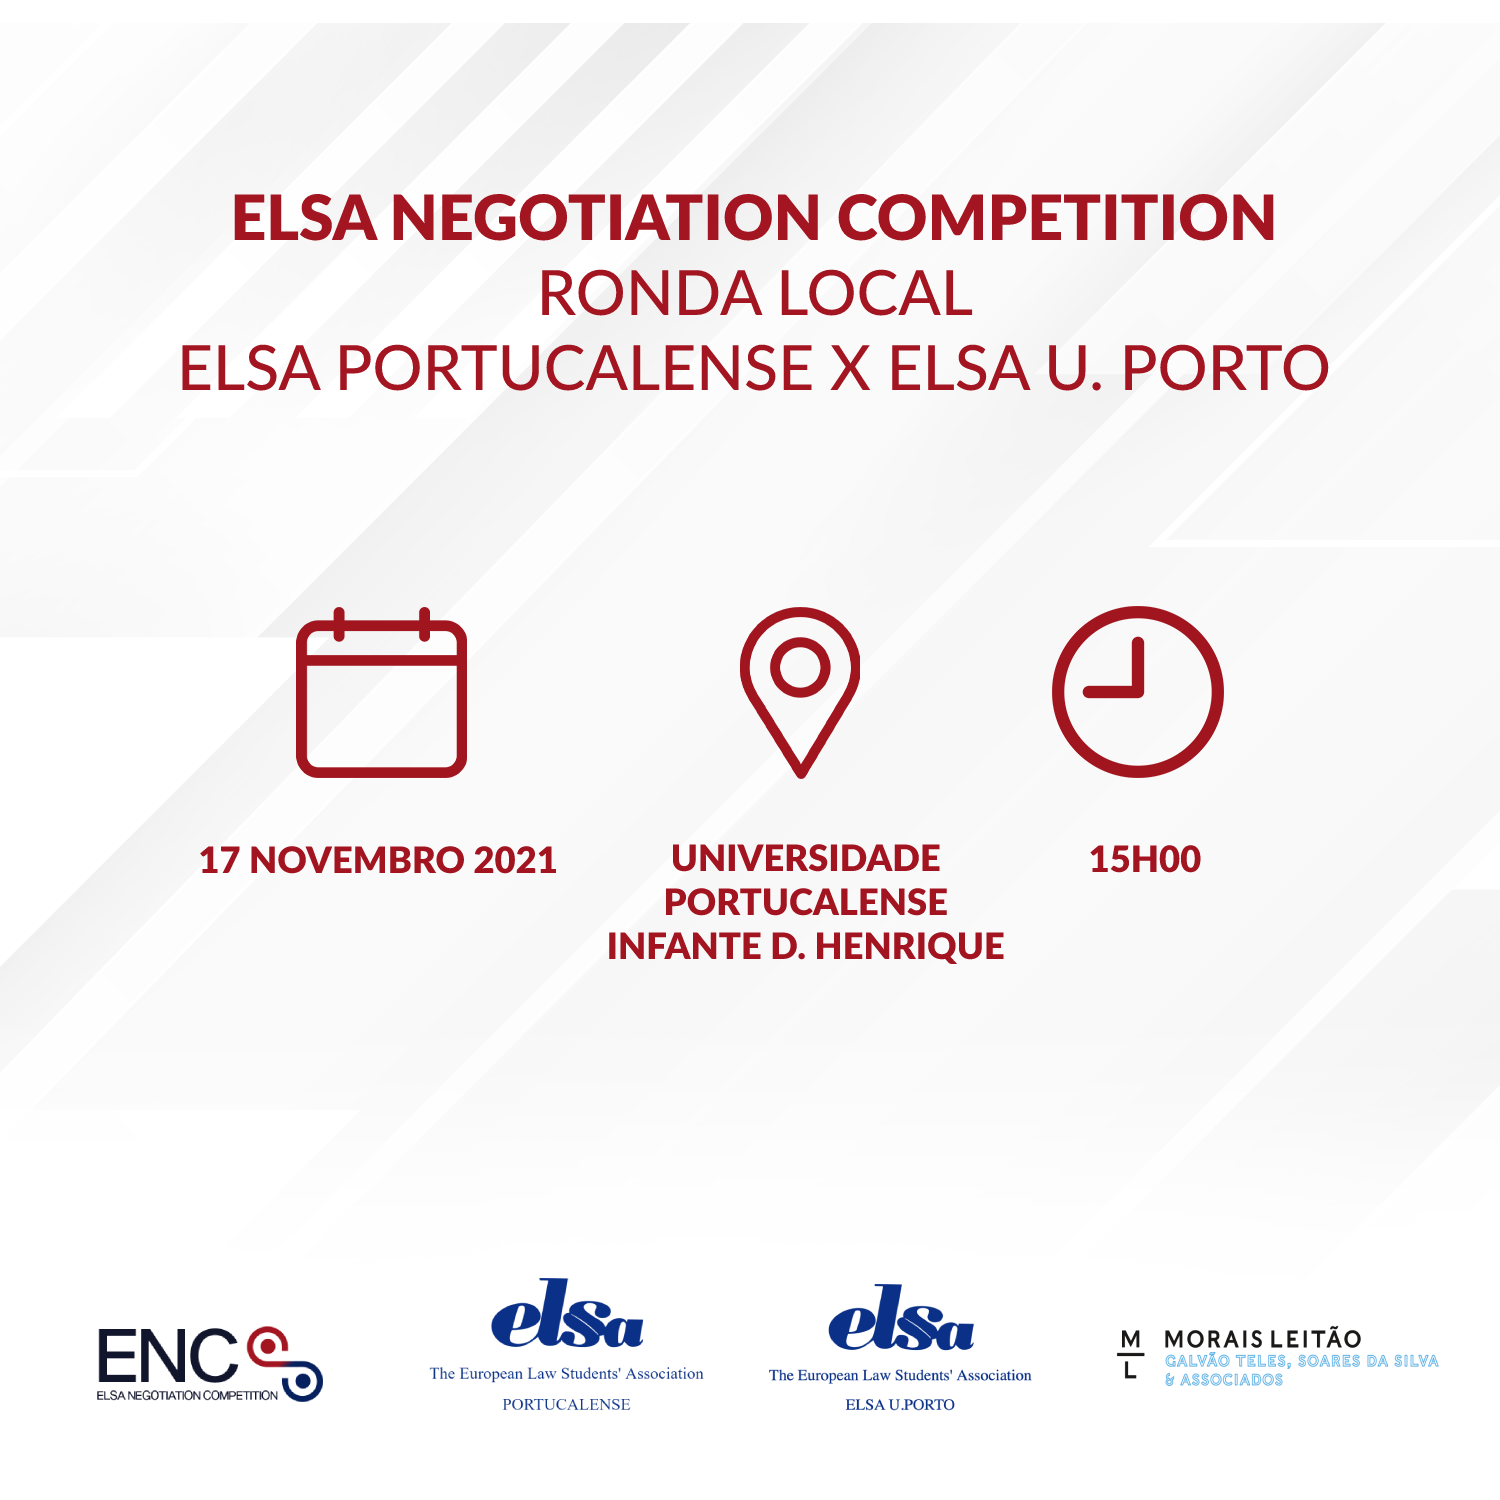 ELSA Negotiation Competition – ELSA Portucalense X ELSA U.PORTO